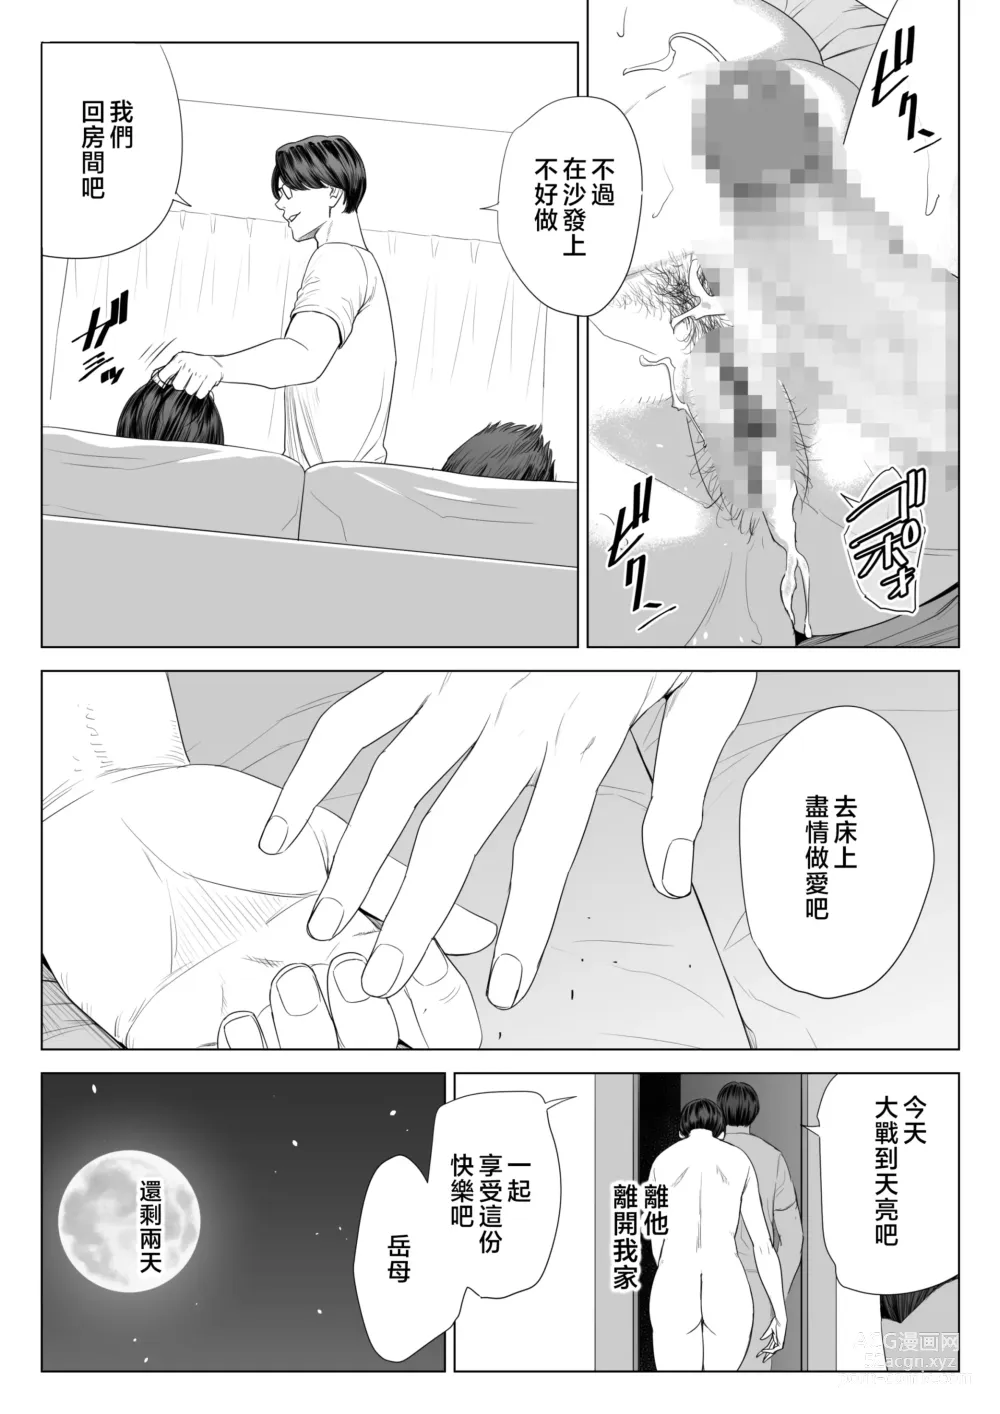 Page 76 of doujinshi Gibo no Tsukaeru Karada.